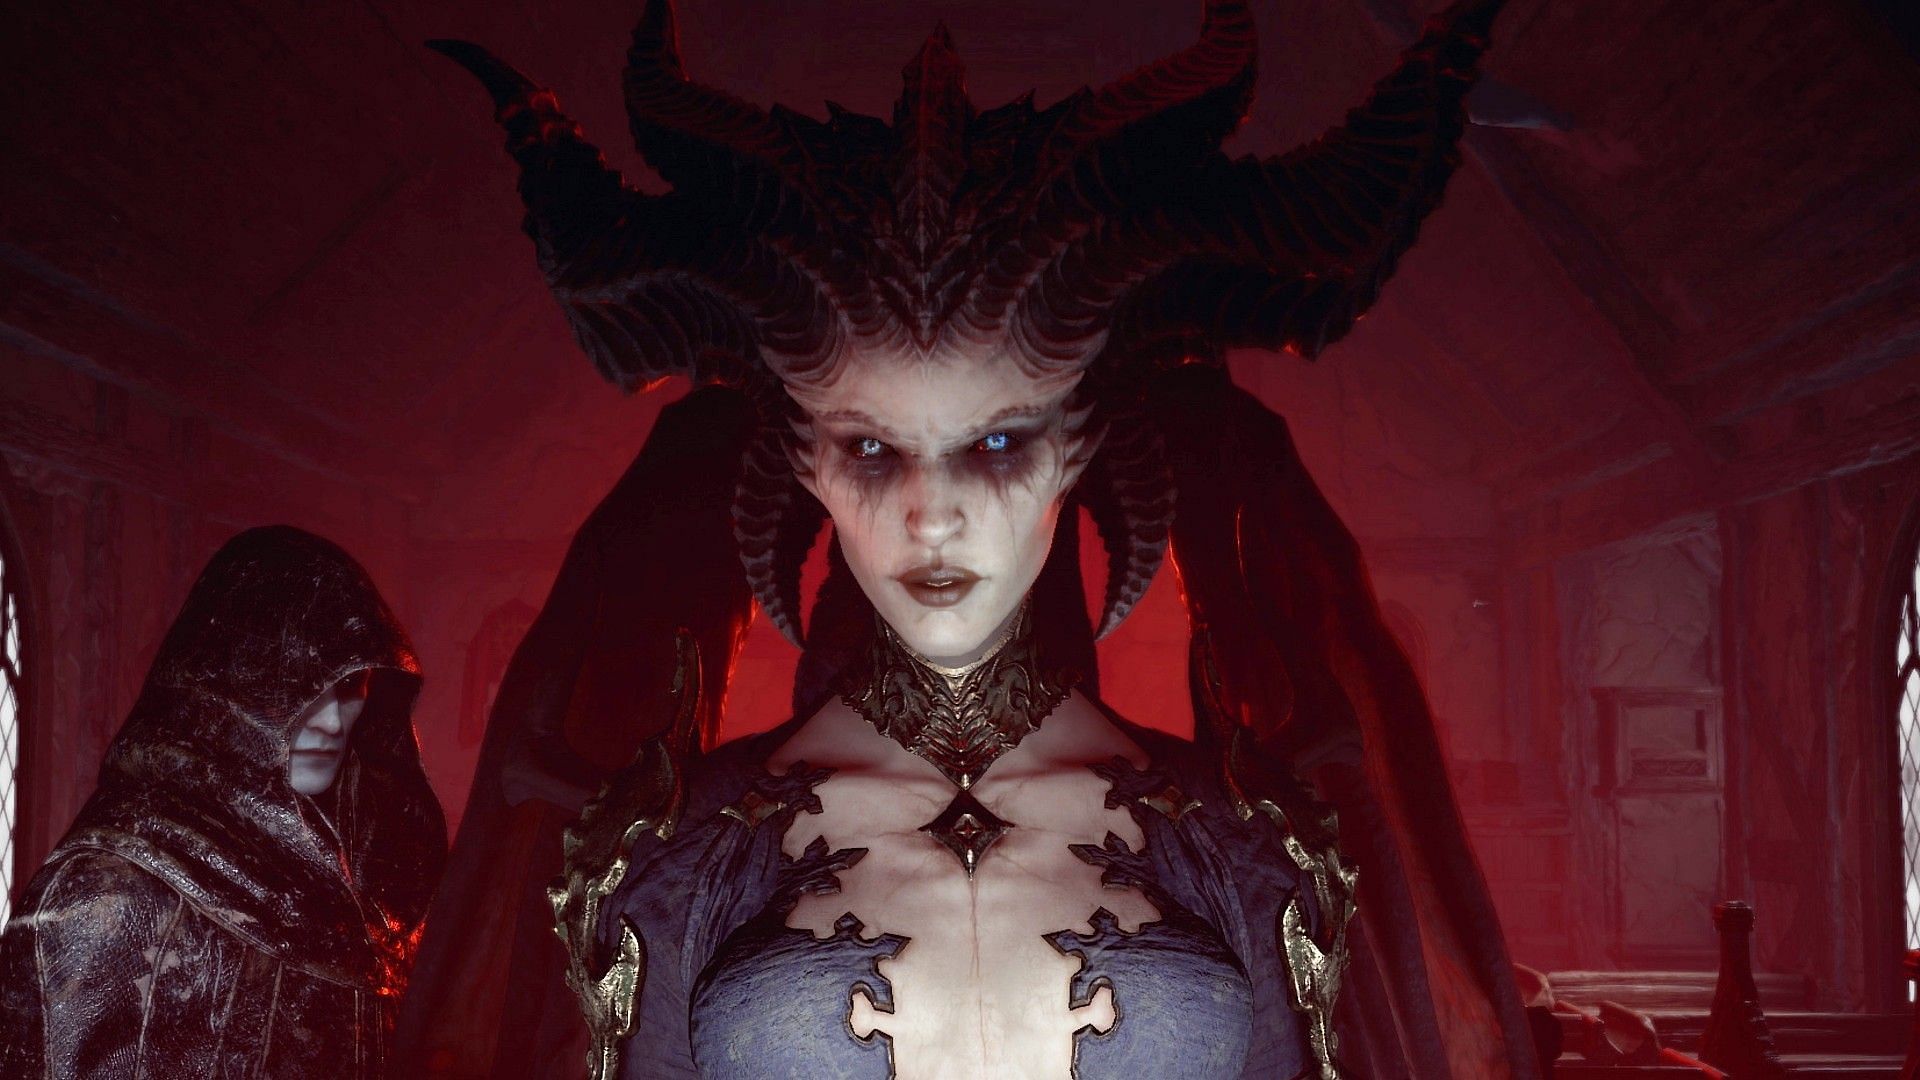 Diablo IV PS5 Skin – Lux Skins Official